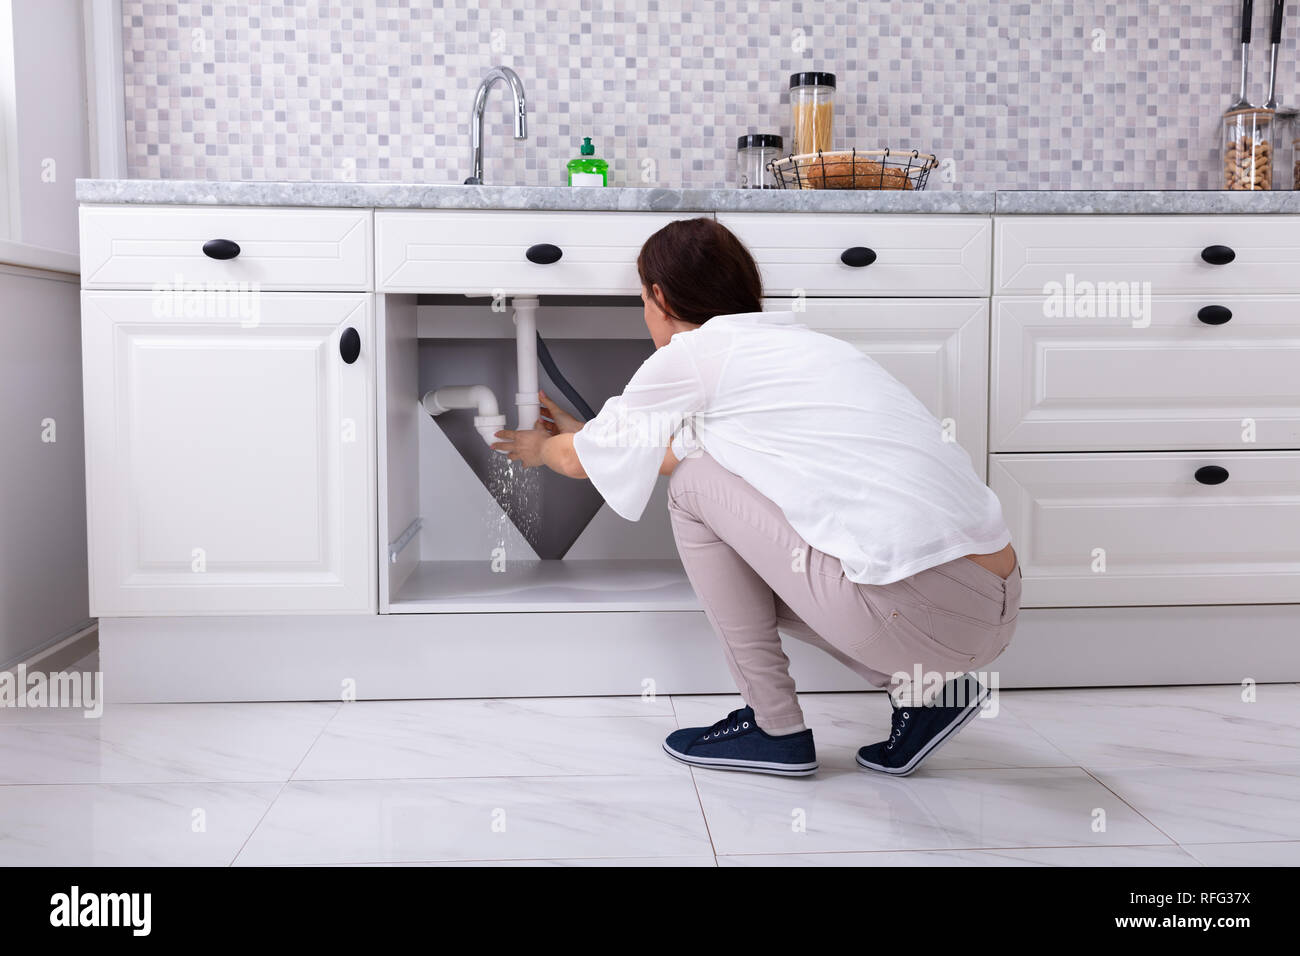 Rückansicht einer Frau Versuchen zu stoppen Wasseraustritt aus Waschbecken Rohr in der Küche Stockfoto